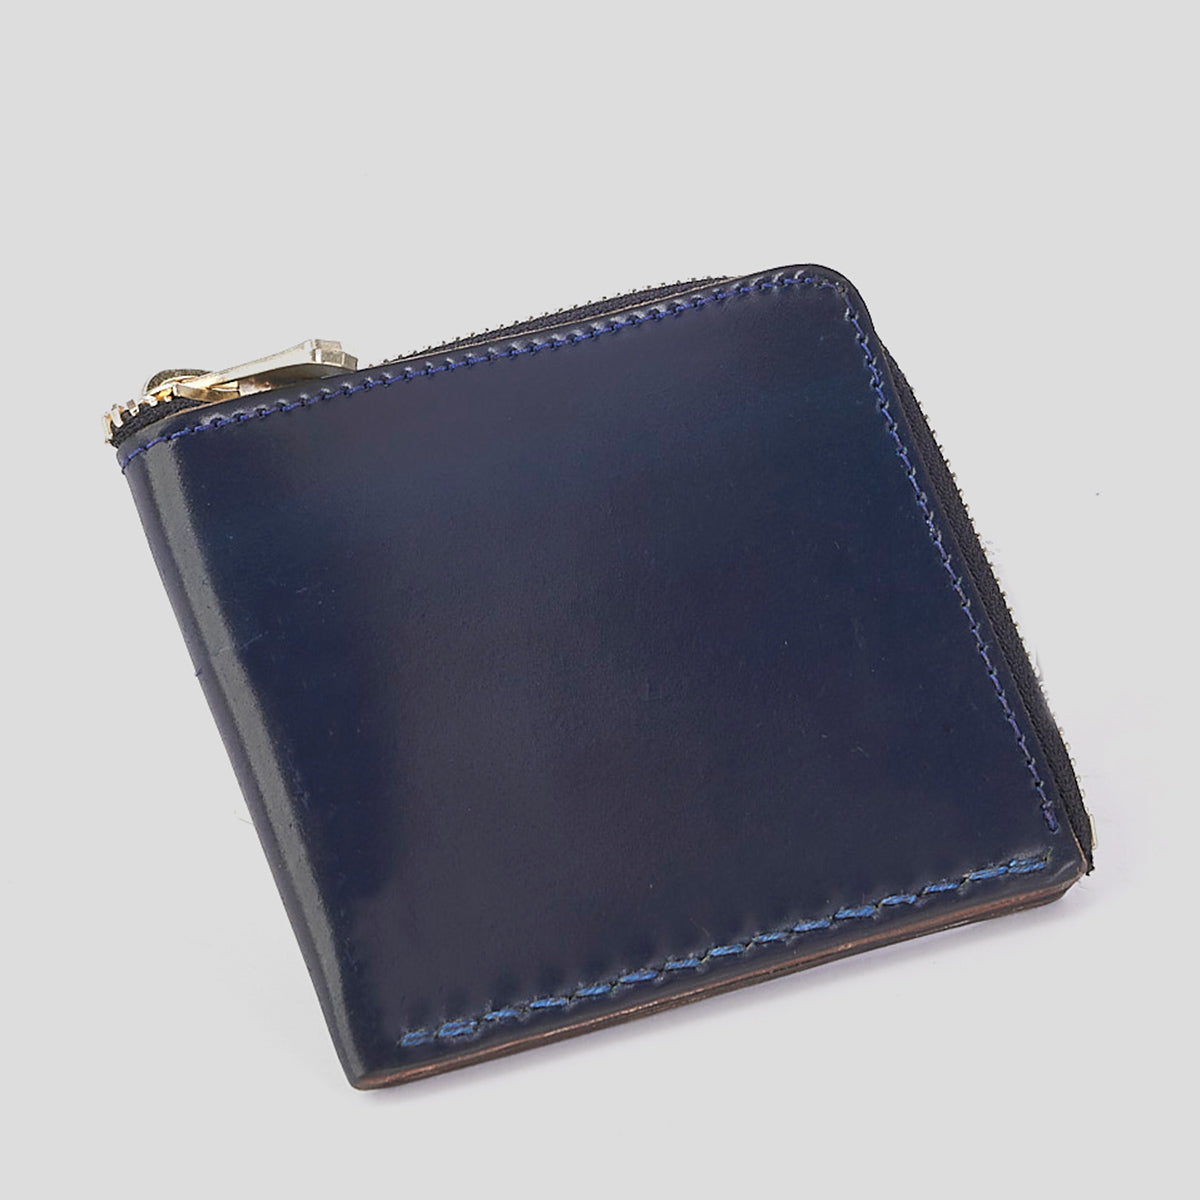 Horween Shell Cordovan Zip Wallet No.11